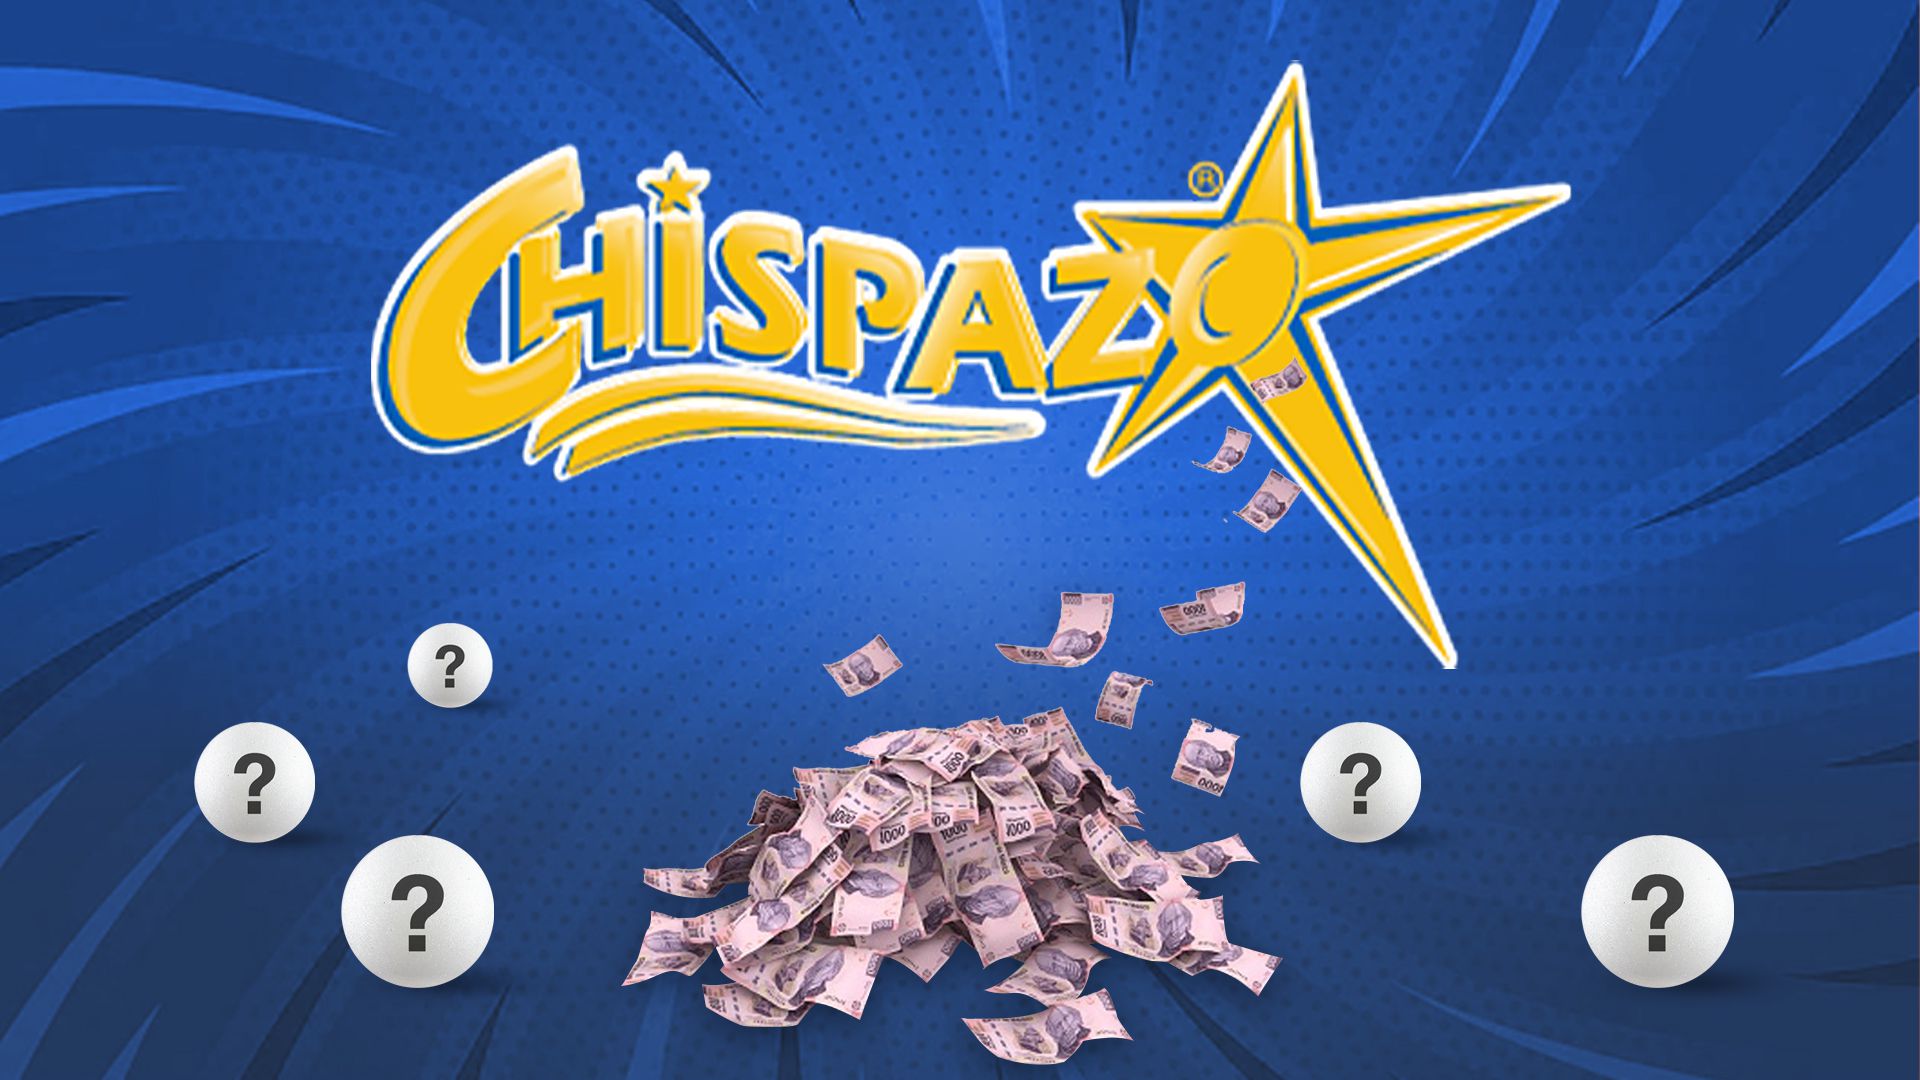 ¿Eres el afortunado ganador del sorteo Chispazo?